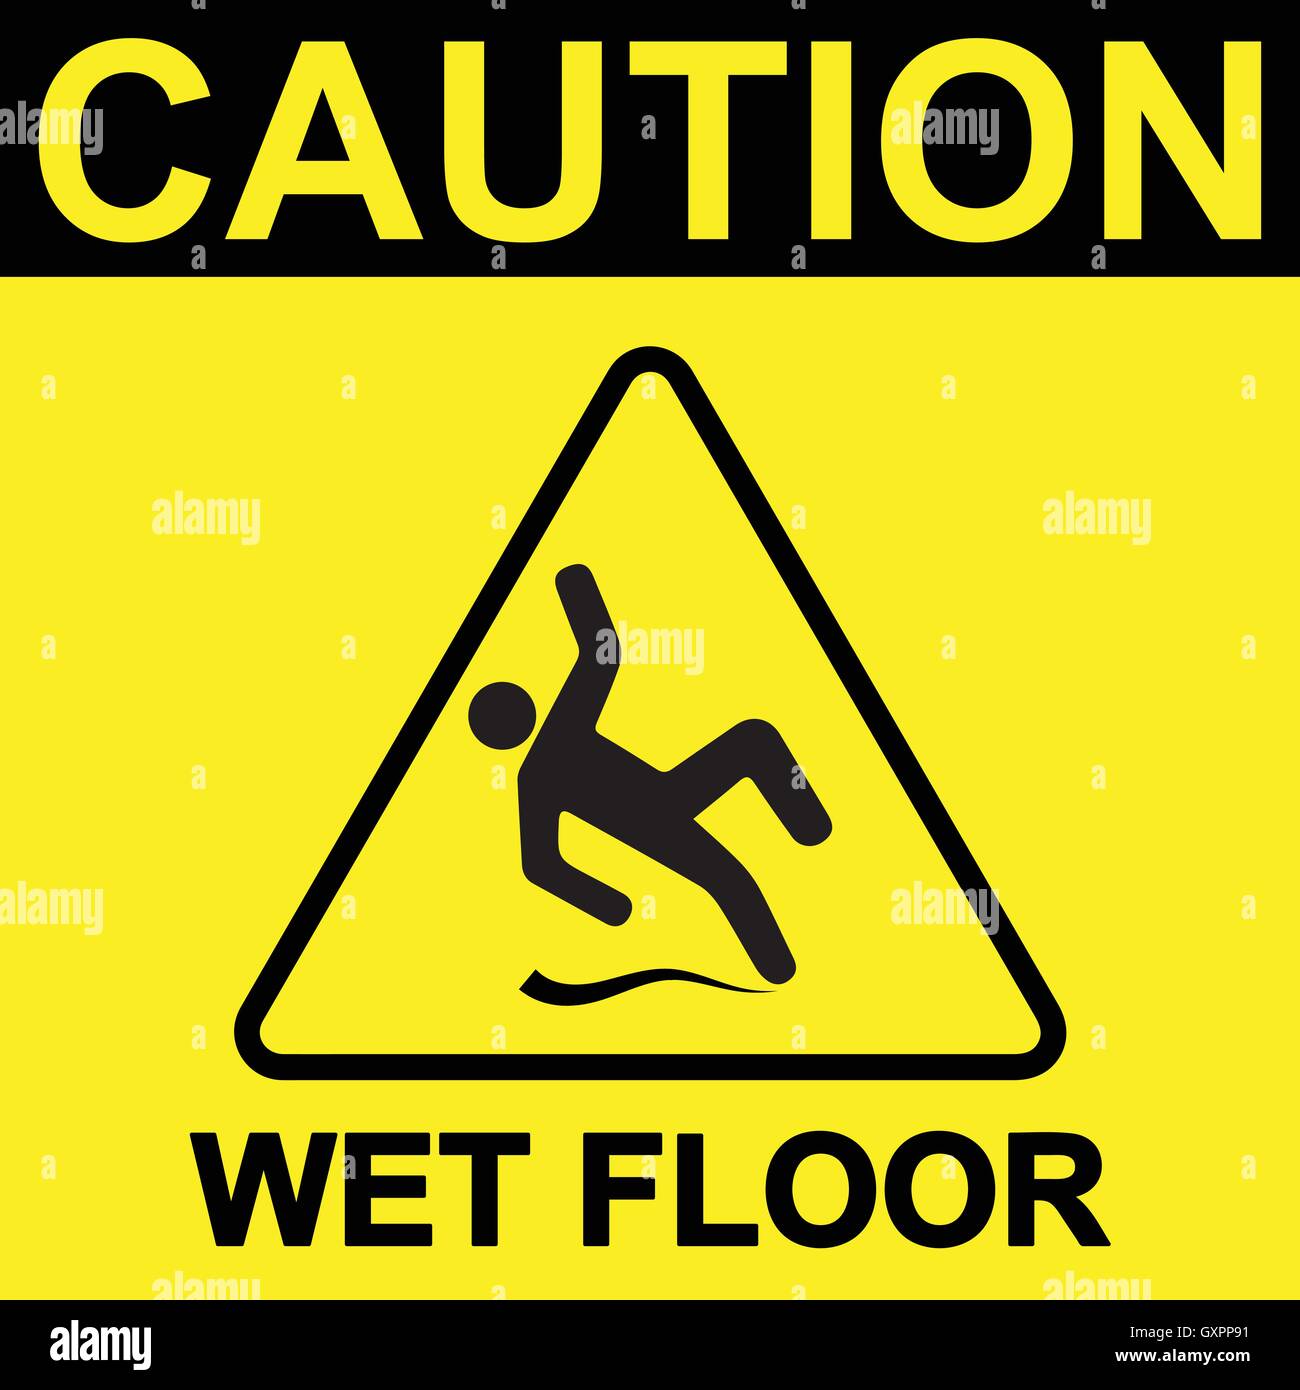 caution-wet-floor-sign-black-wet-floor-symbol-on-yellow-background